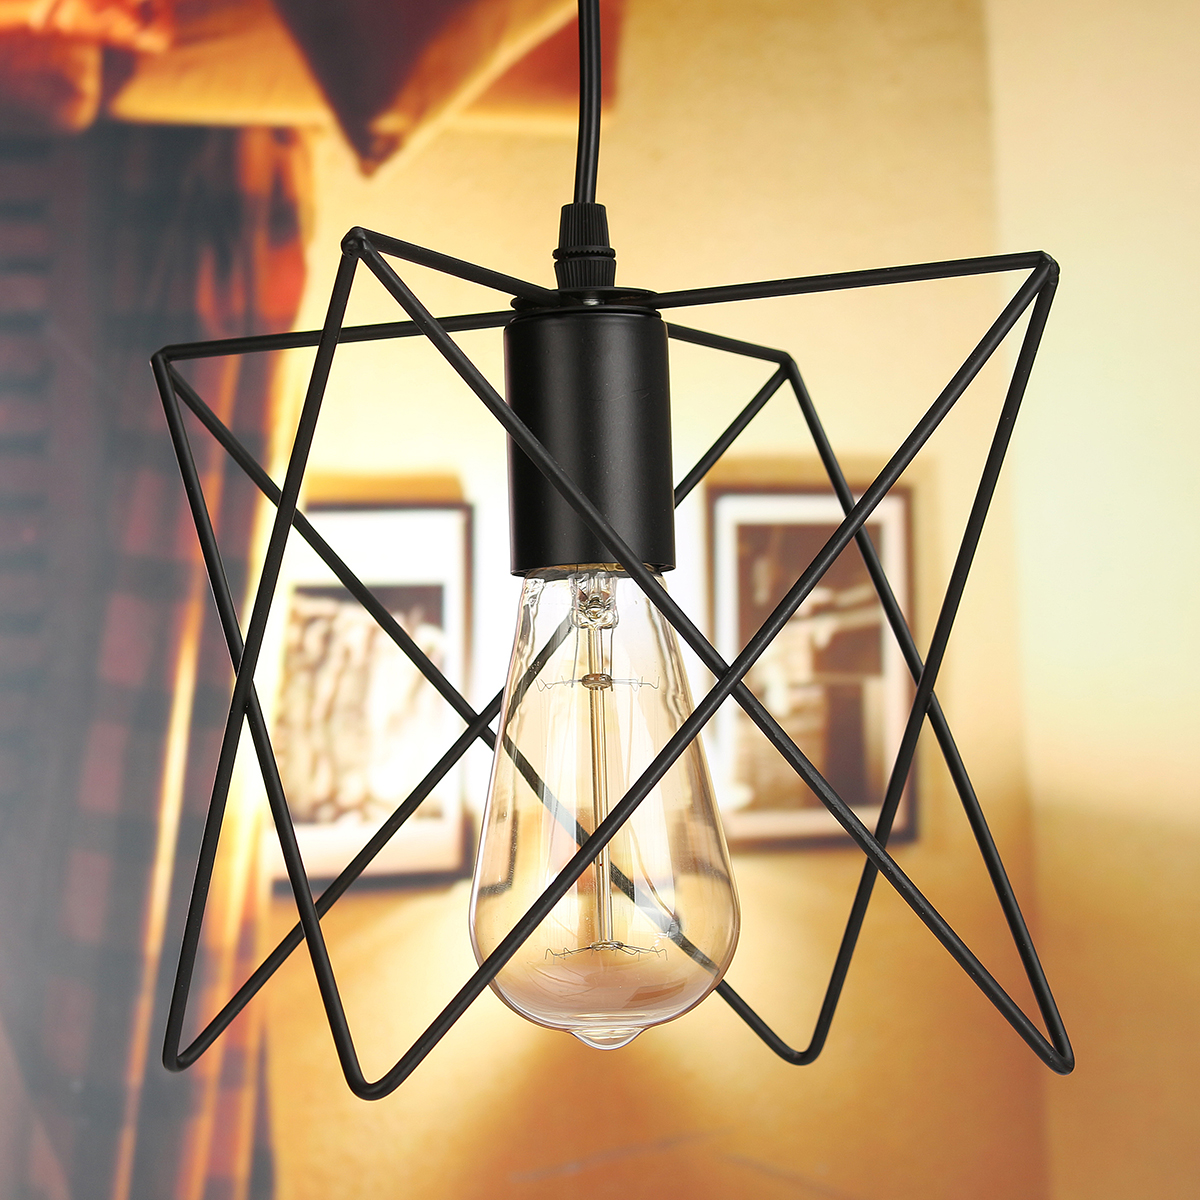 3-In-1-Metal-Vintage-Ceiling-Light-Pendant-Lamp-Cage-Lampshade-Fixture-Chandelier-Indoor-Lighting-1118747-5